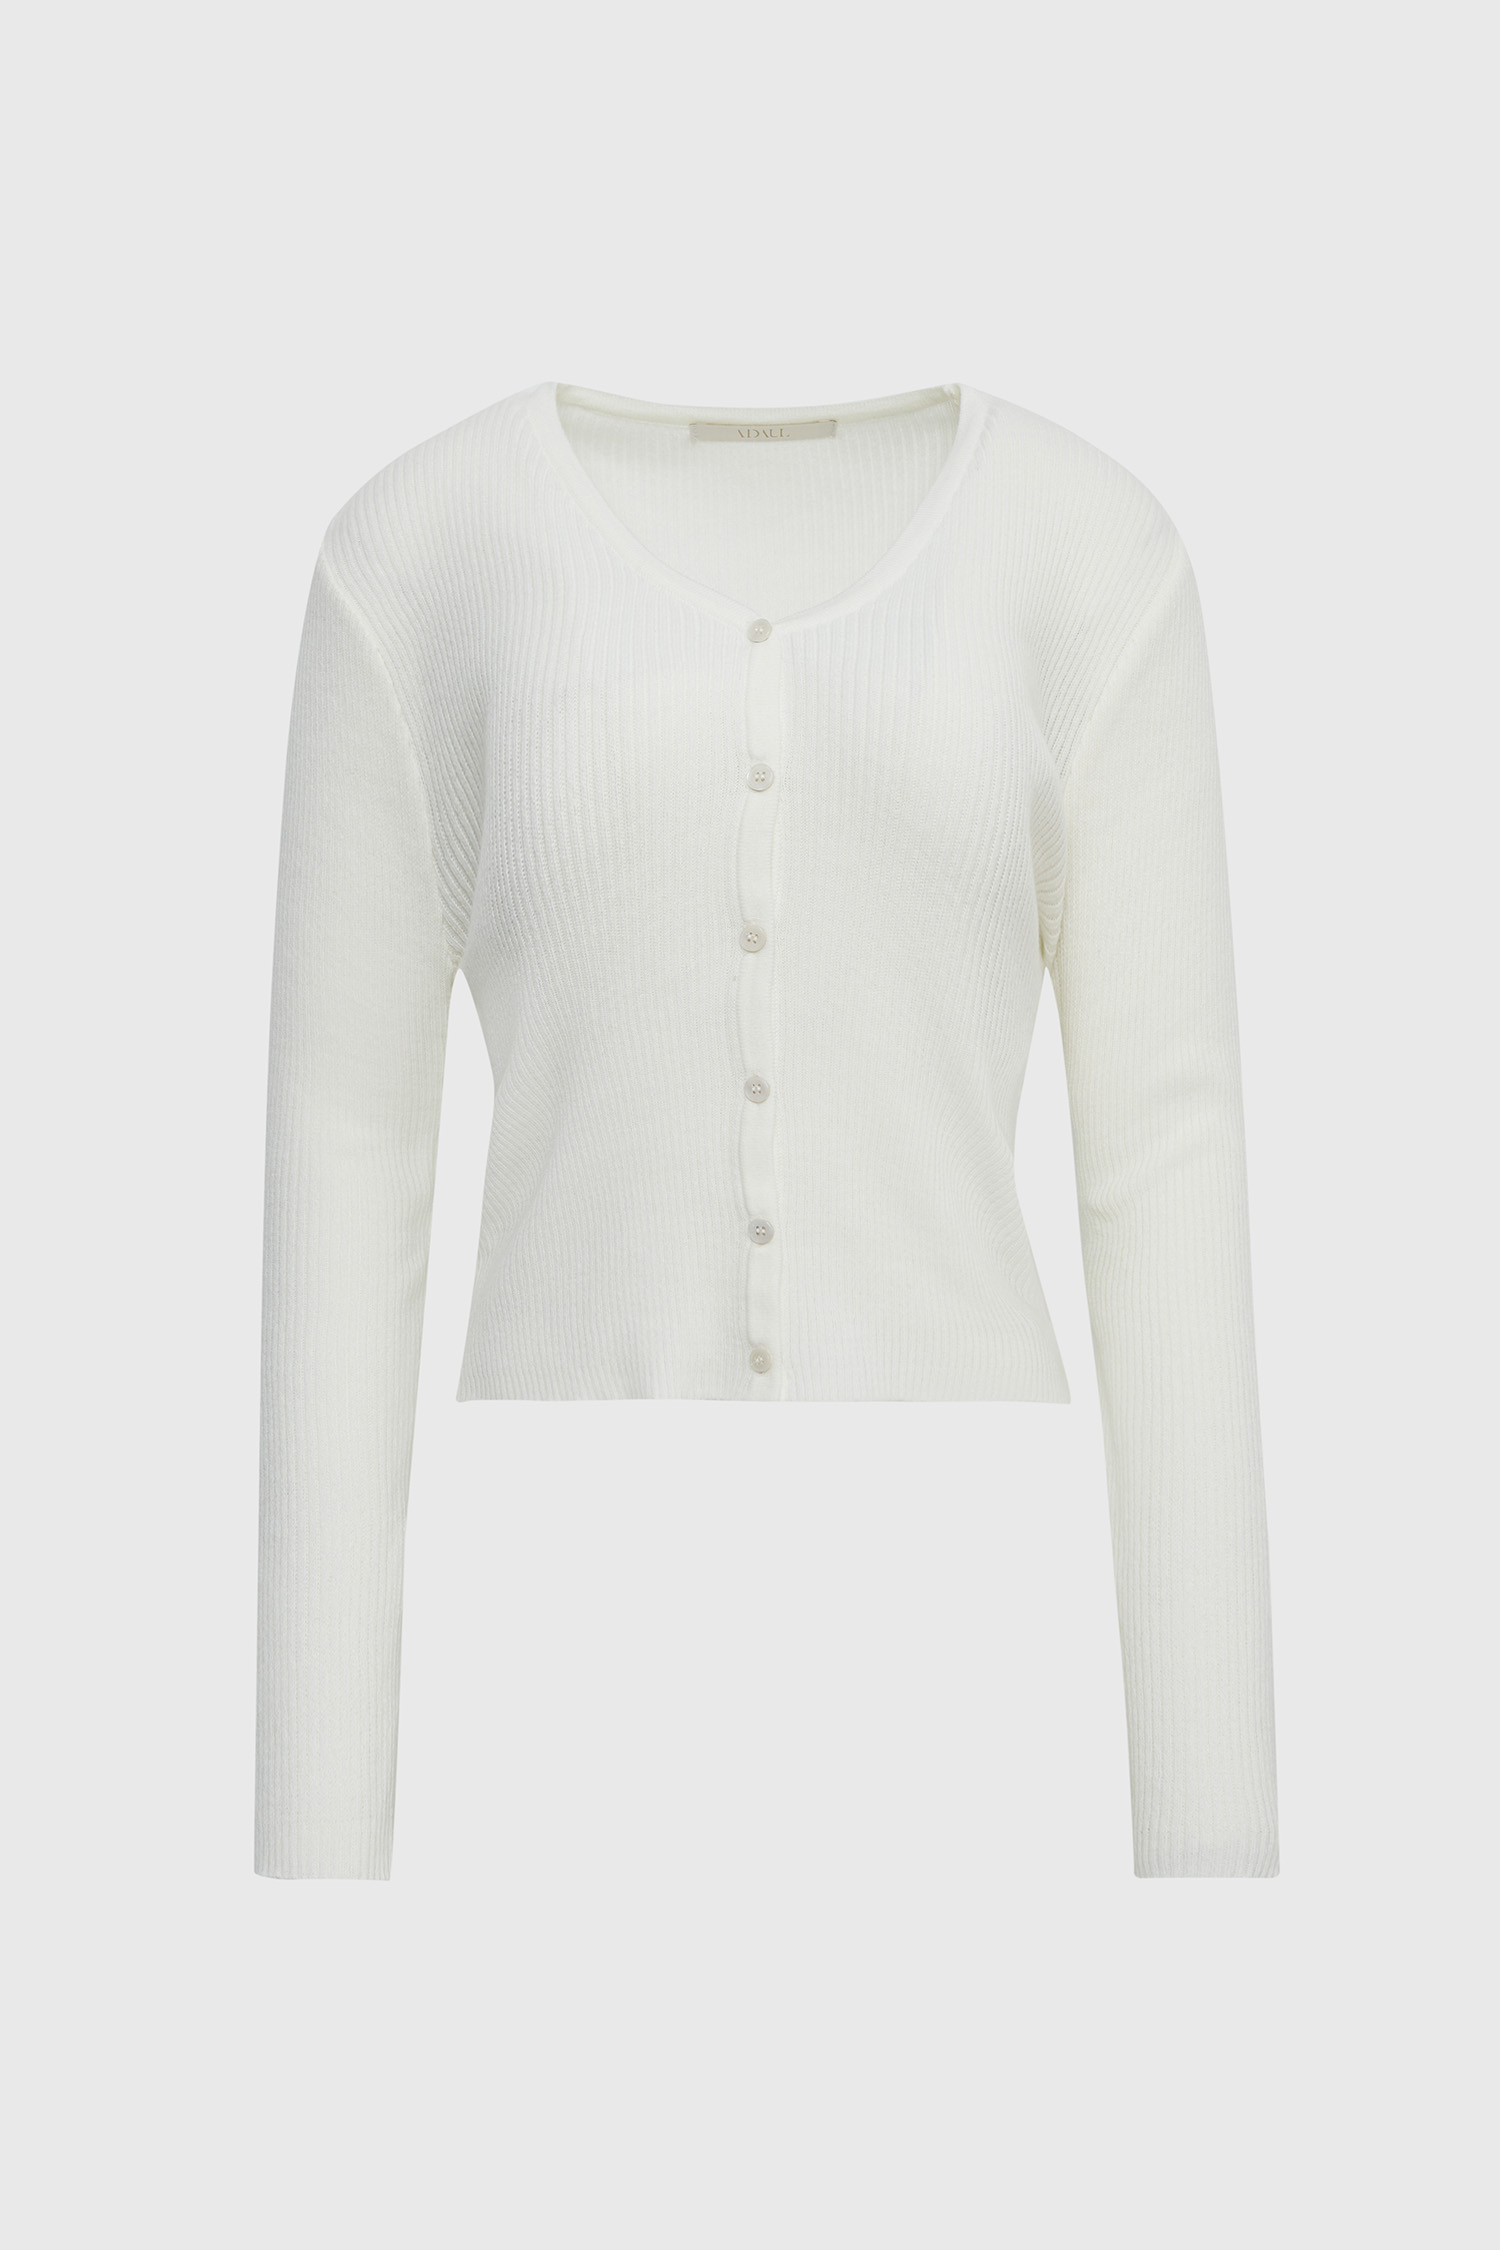 Wearable golgi cardigan - white